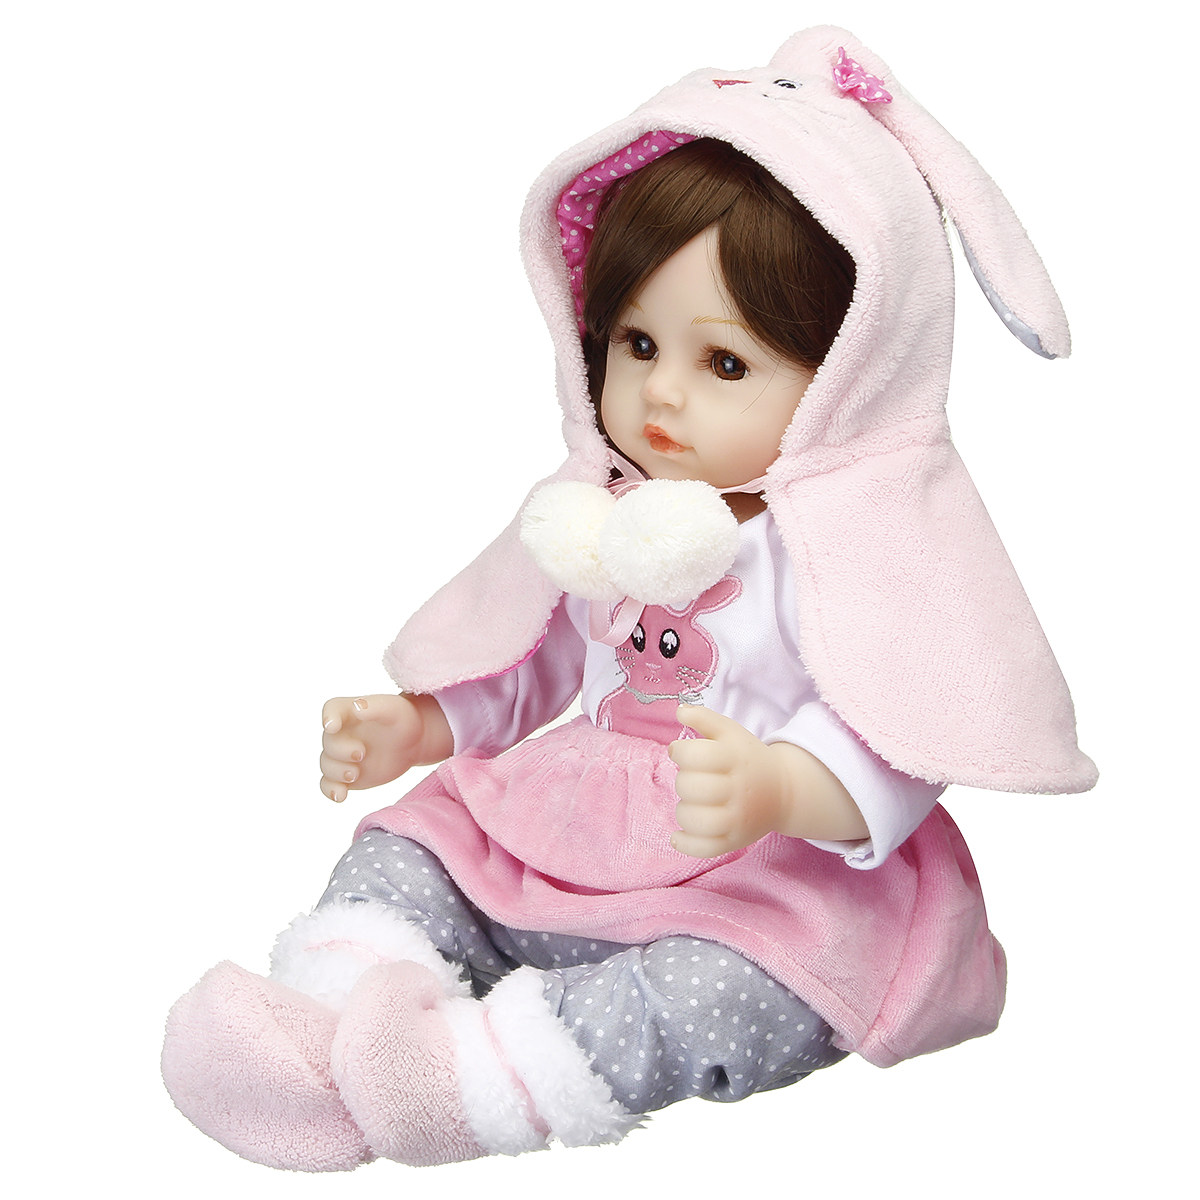 Novashion Reborn Baby Dolls Realistic Newborn Boy Girl Doll